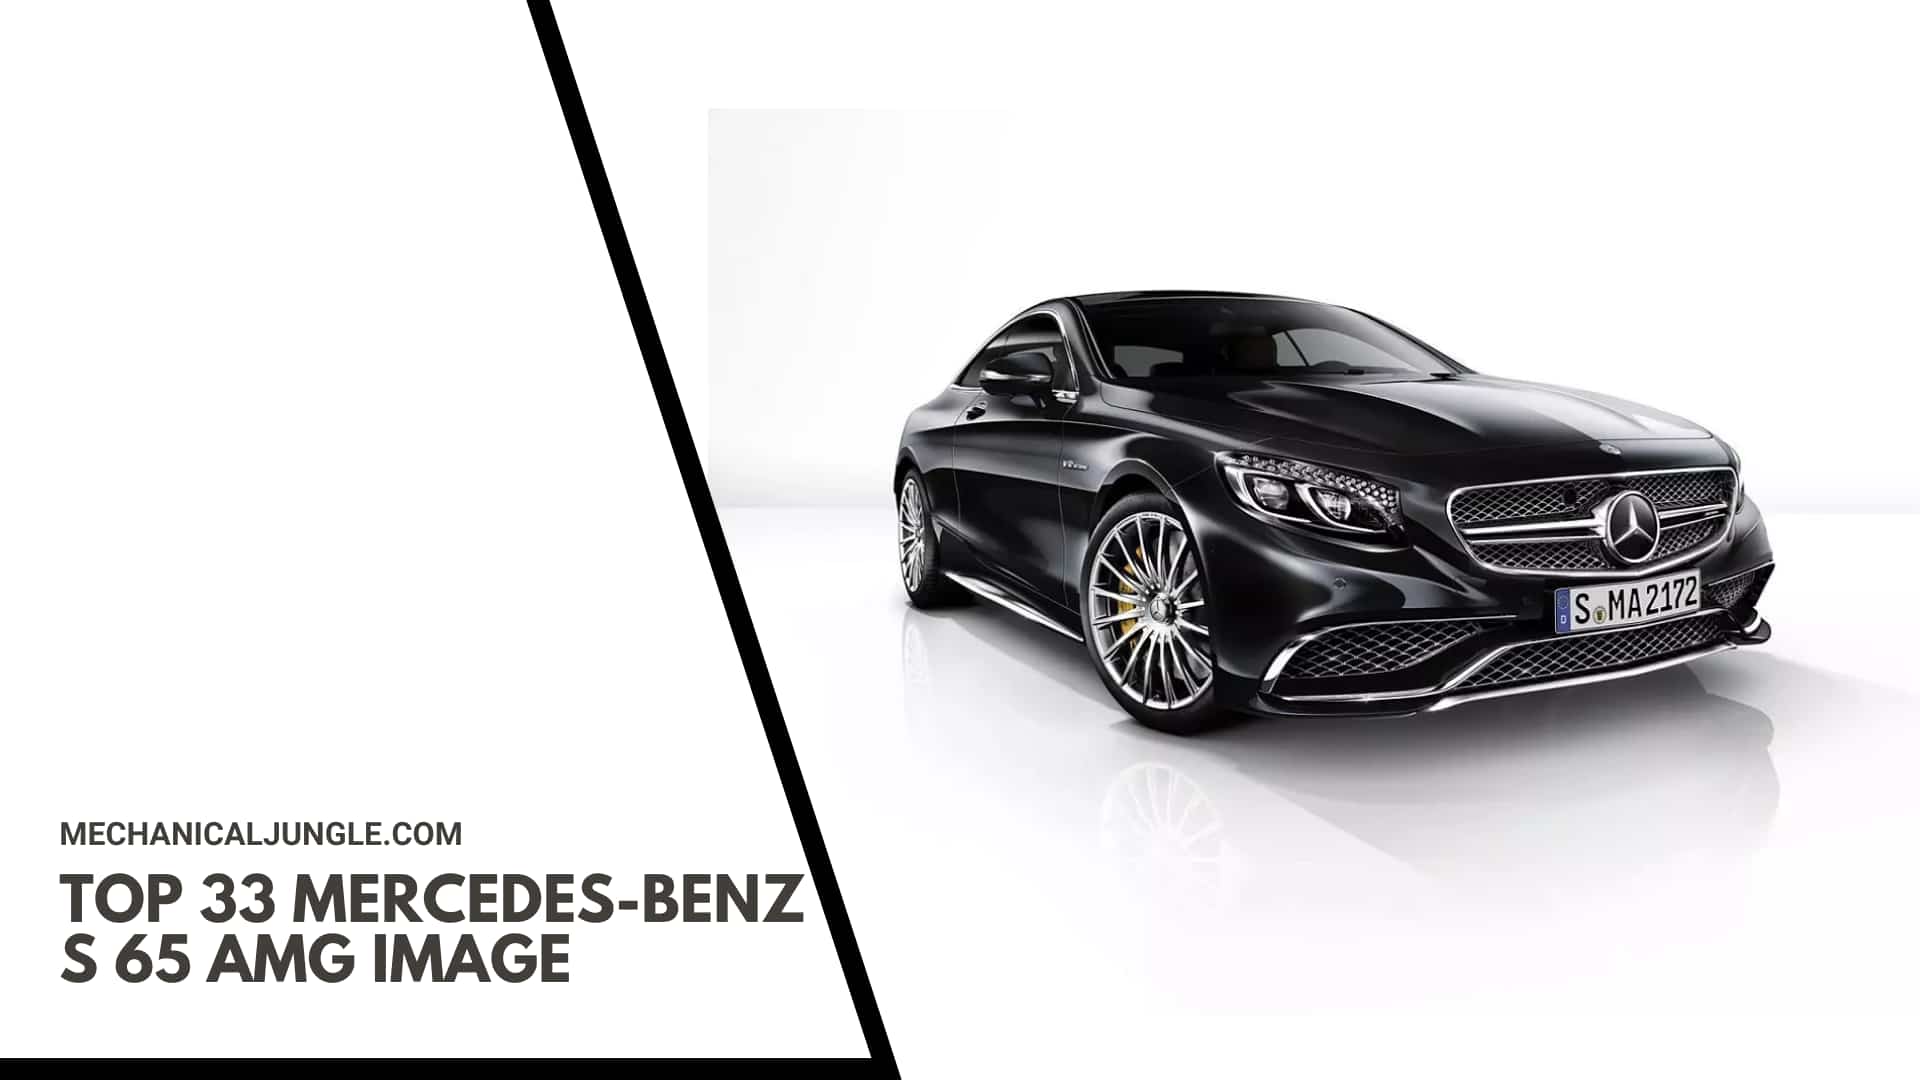 Top 33 Mercedes-Benz S 65 AMG Image